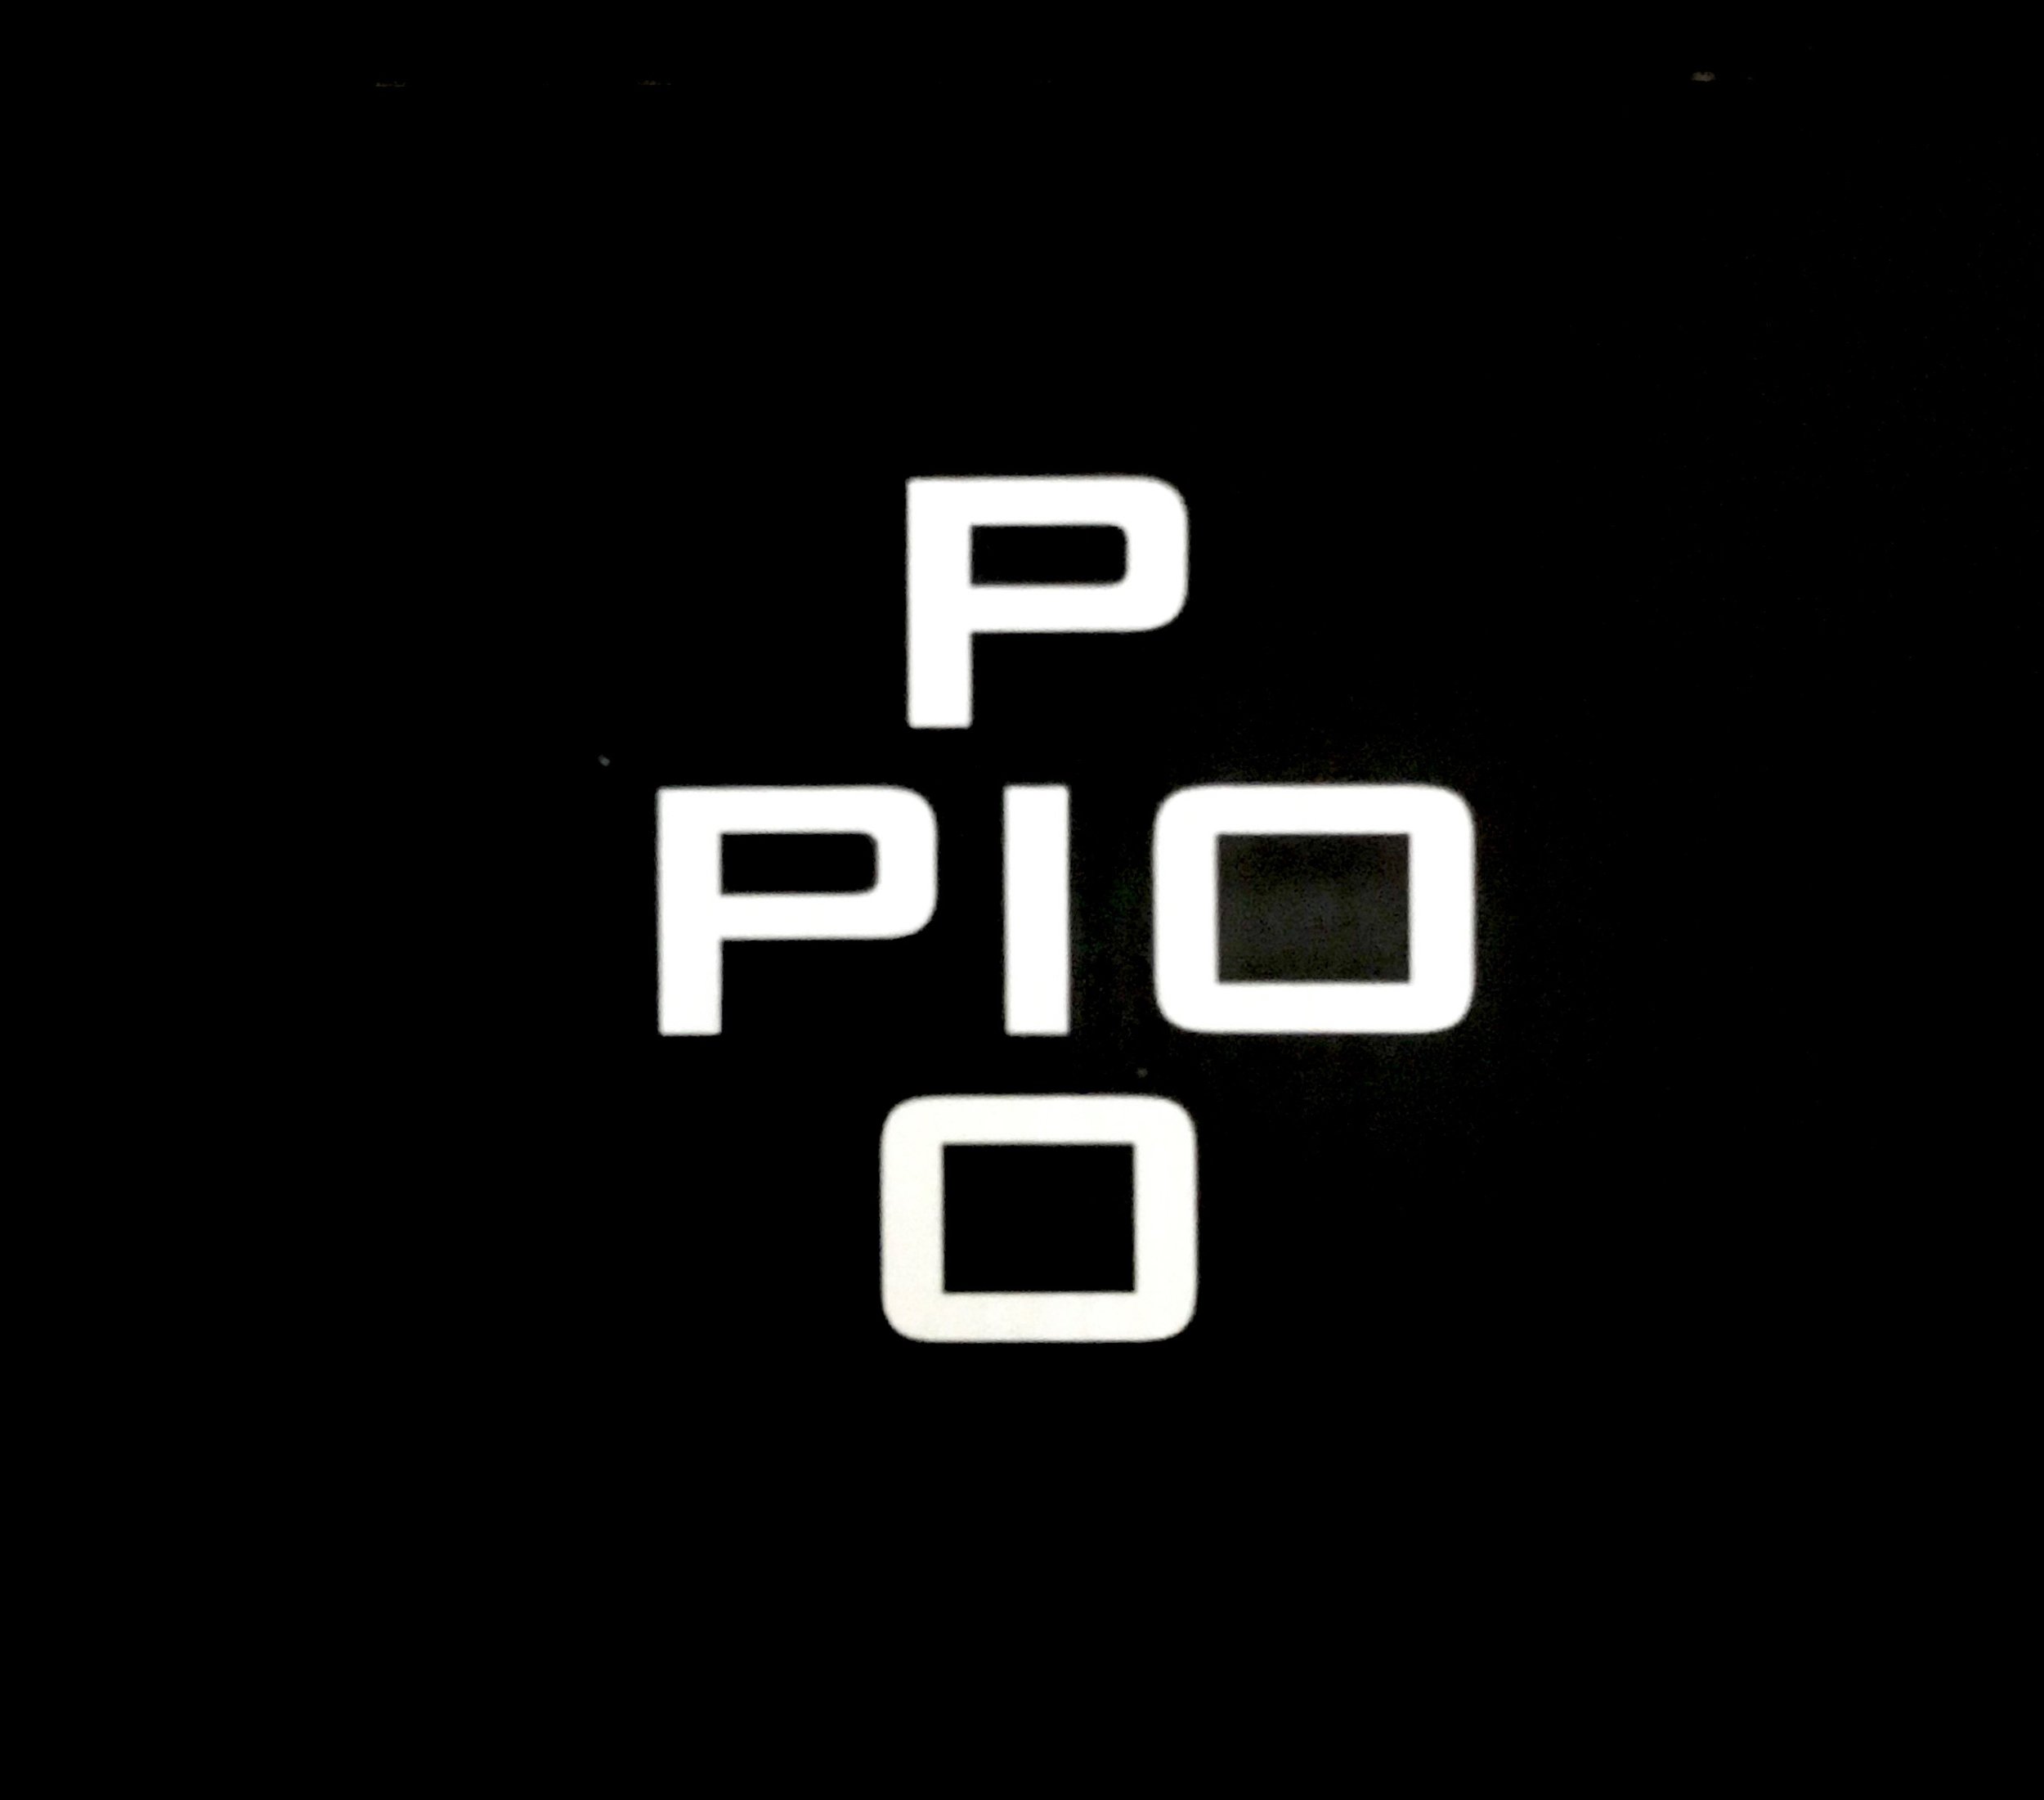 Pio Pio_logo black.JPG